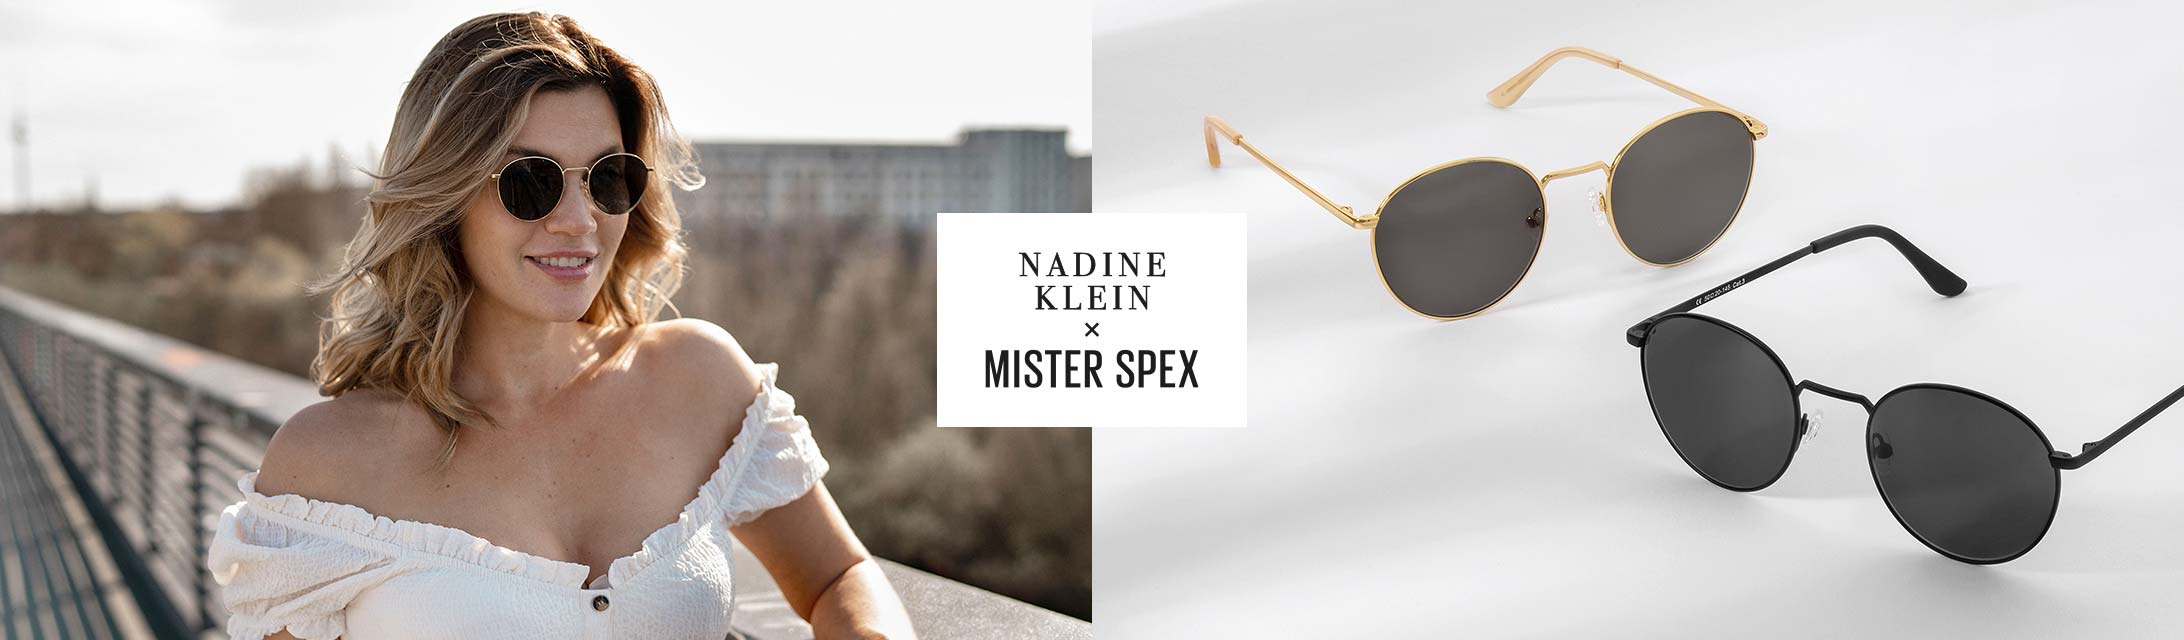 Nadine Klein x Mister Spex